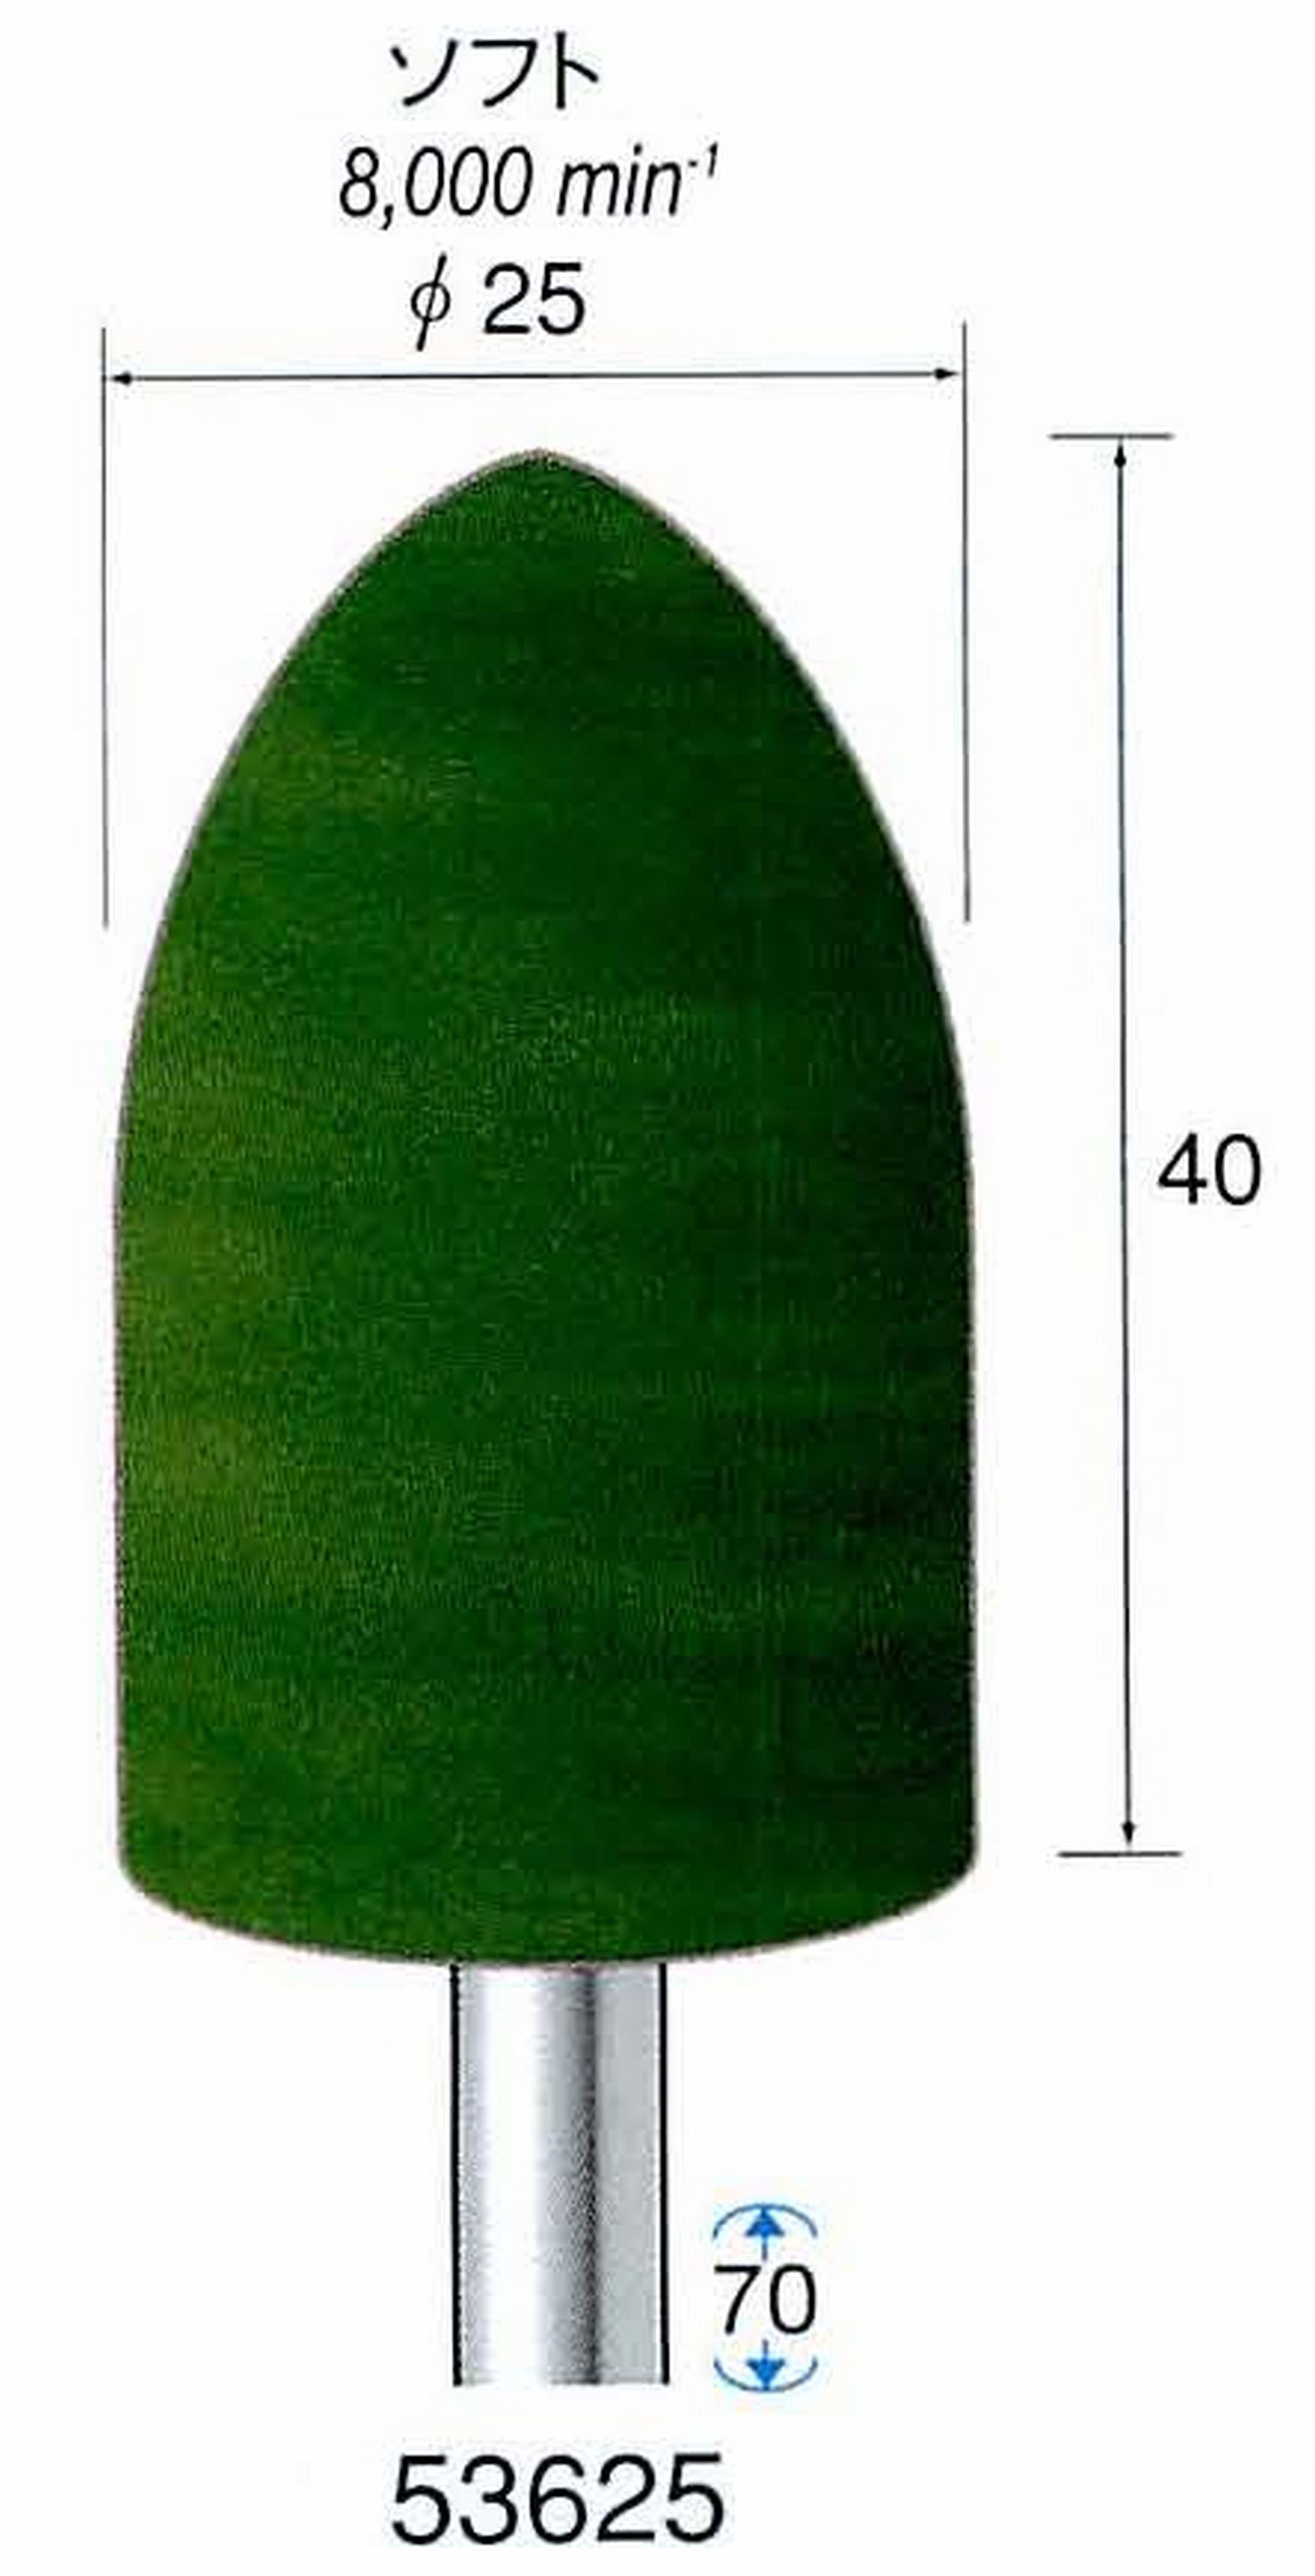 ナカニシ/NAKANISHI グリーンフェルトバフ ソフト(研磨材入り) 酸化クロム(青棒)含浸タイプ 軸径(シャンク)φ6.0mm 53625